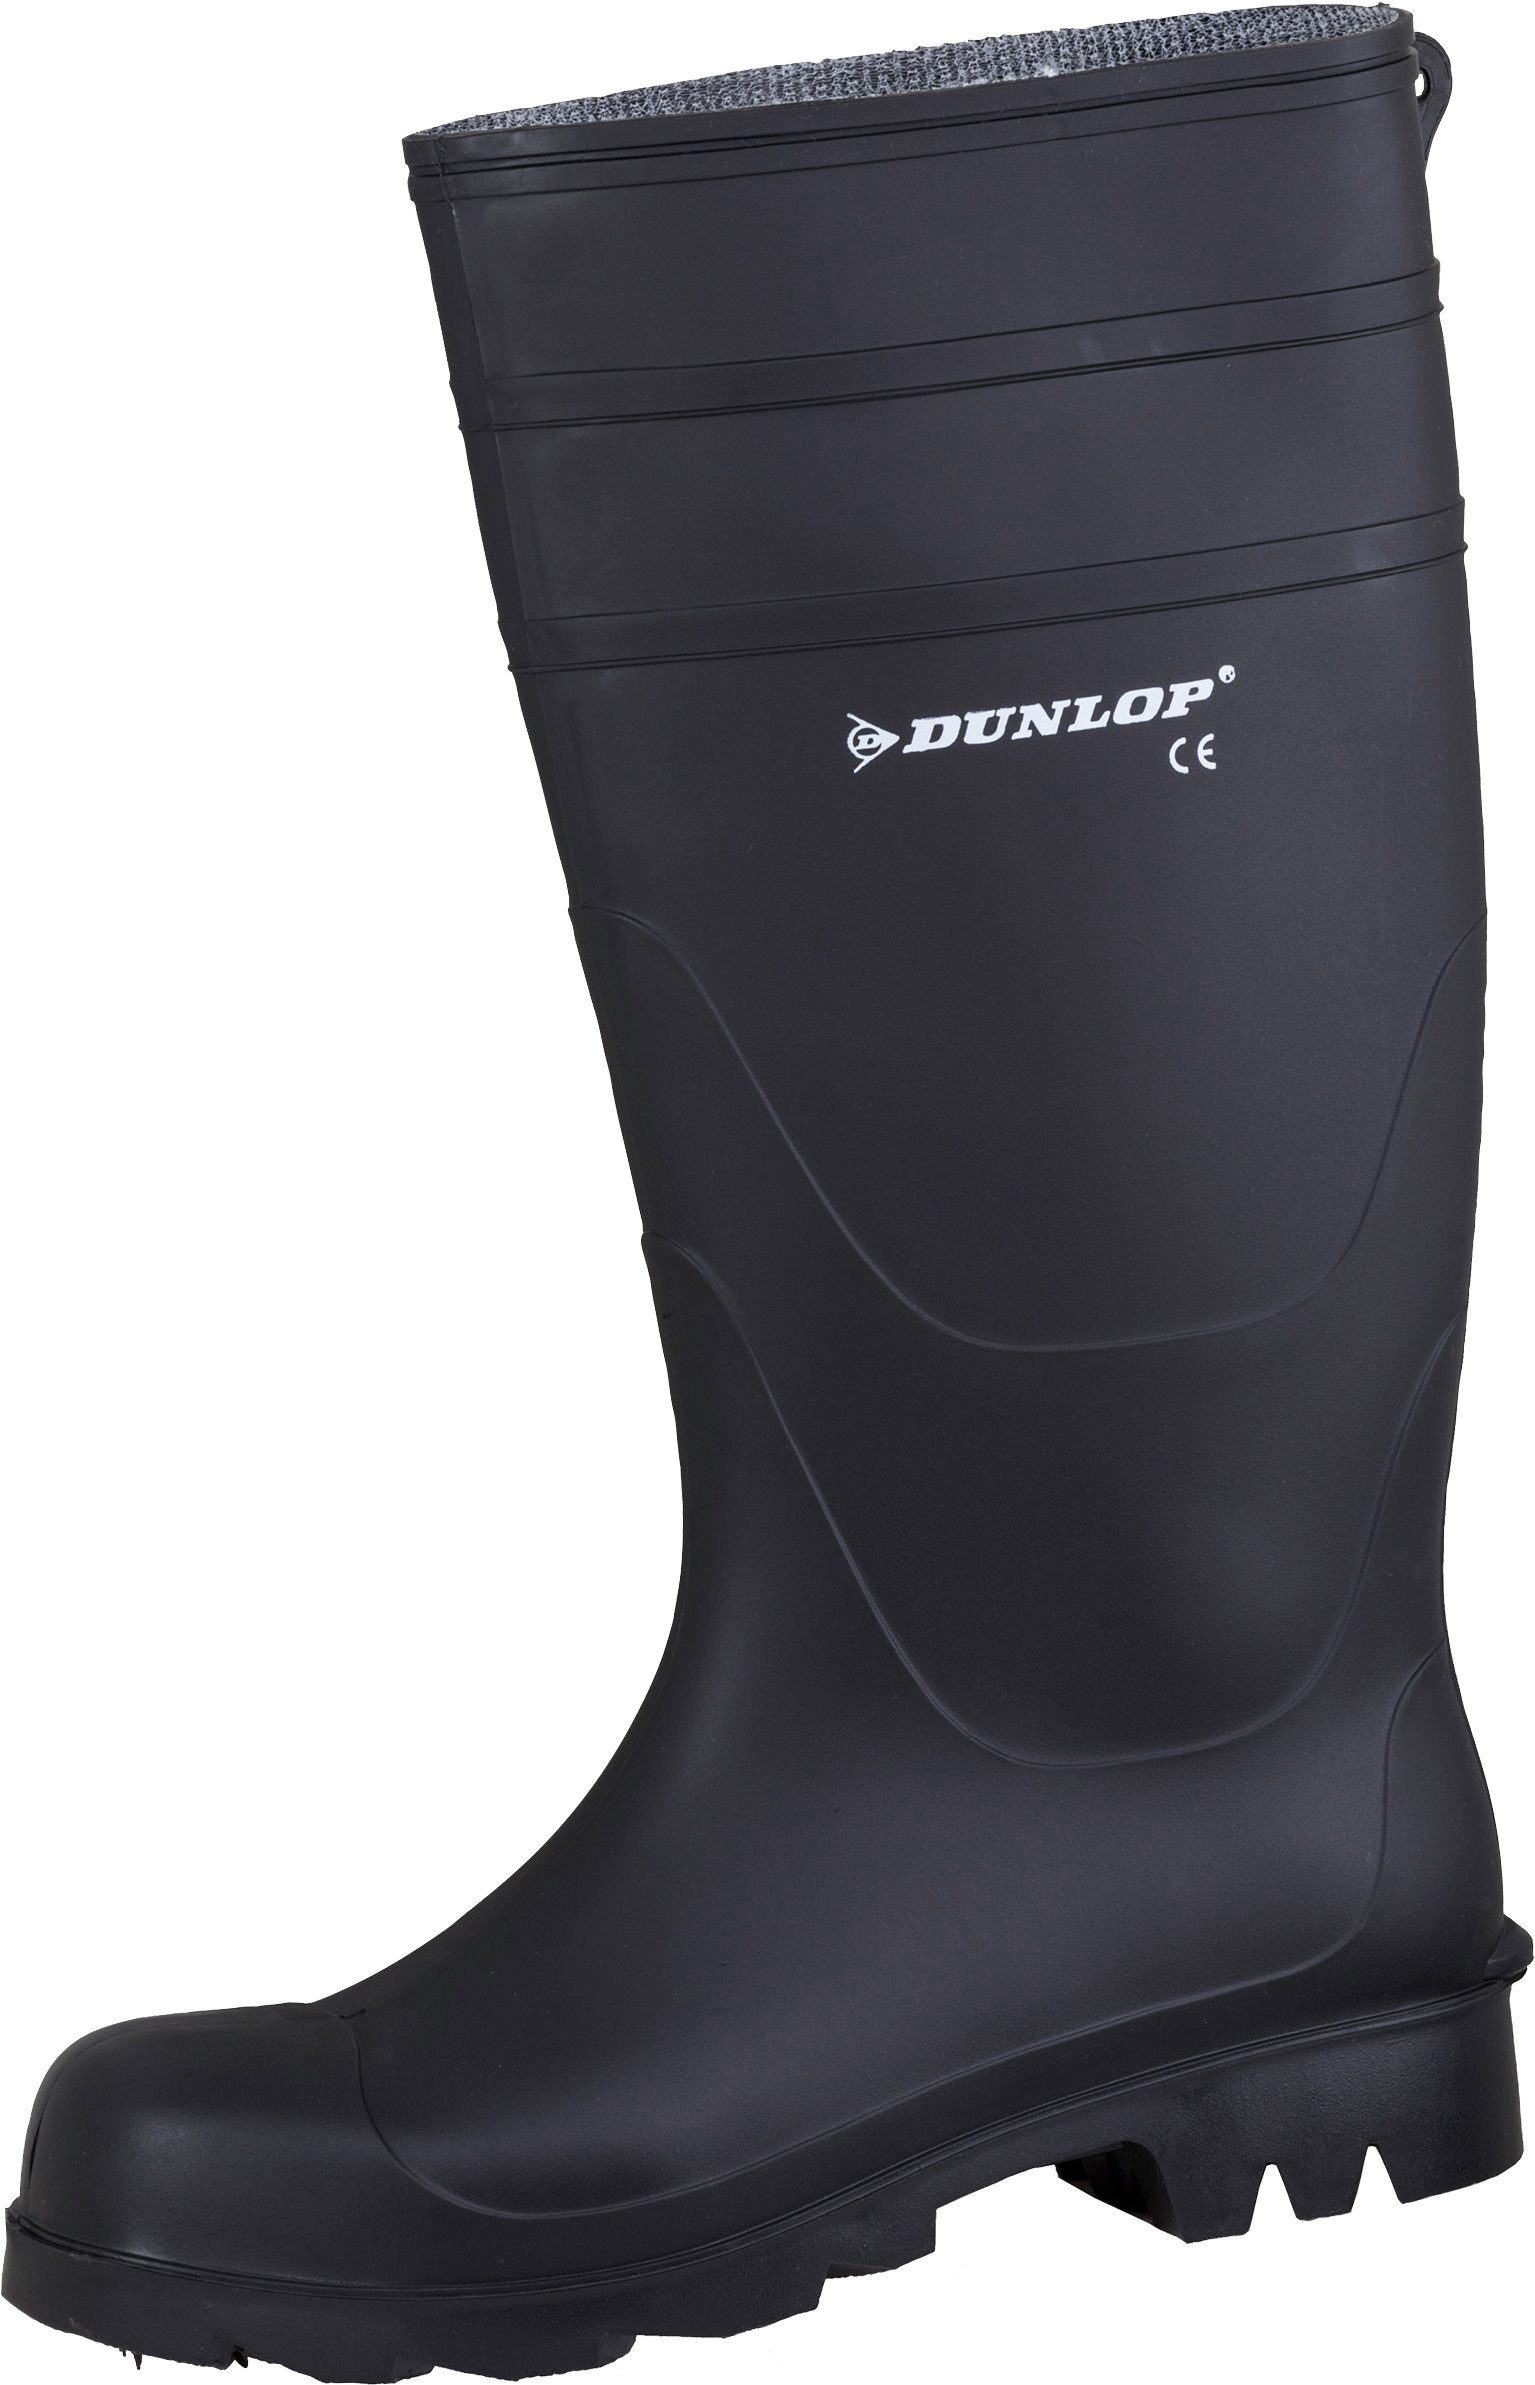 Dunlop_Workwear Universal schwarz Sicherheitsstiefel ohneSicherheitsklasse